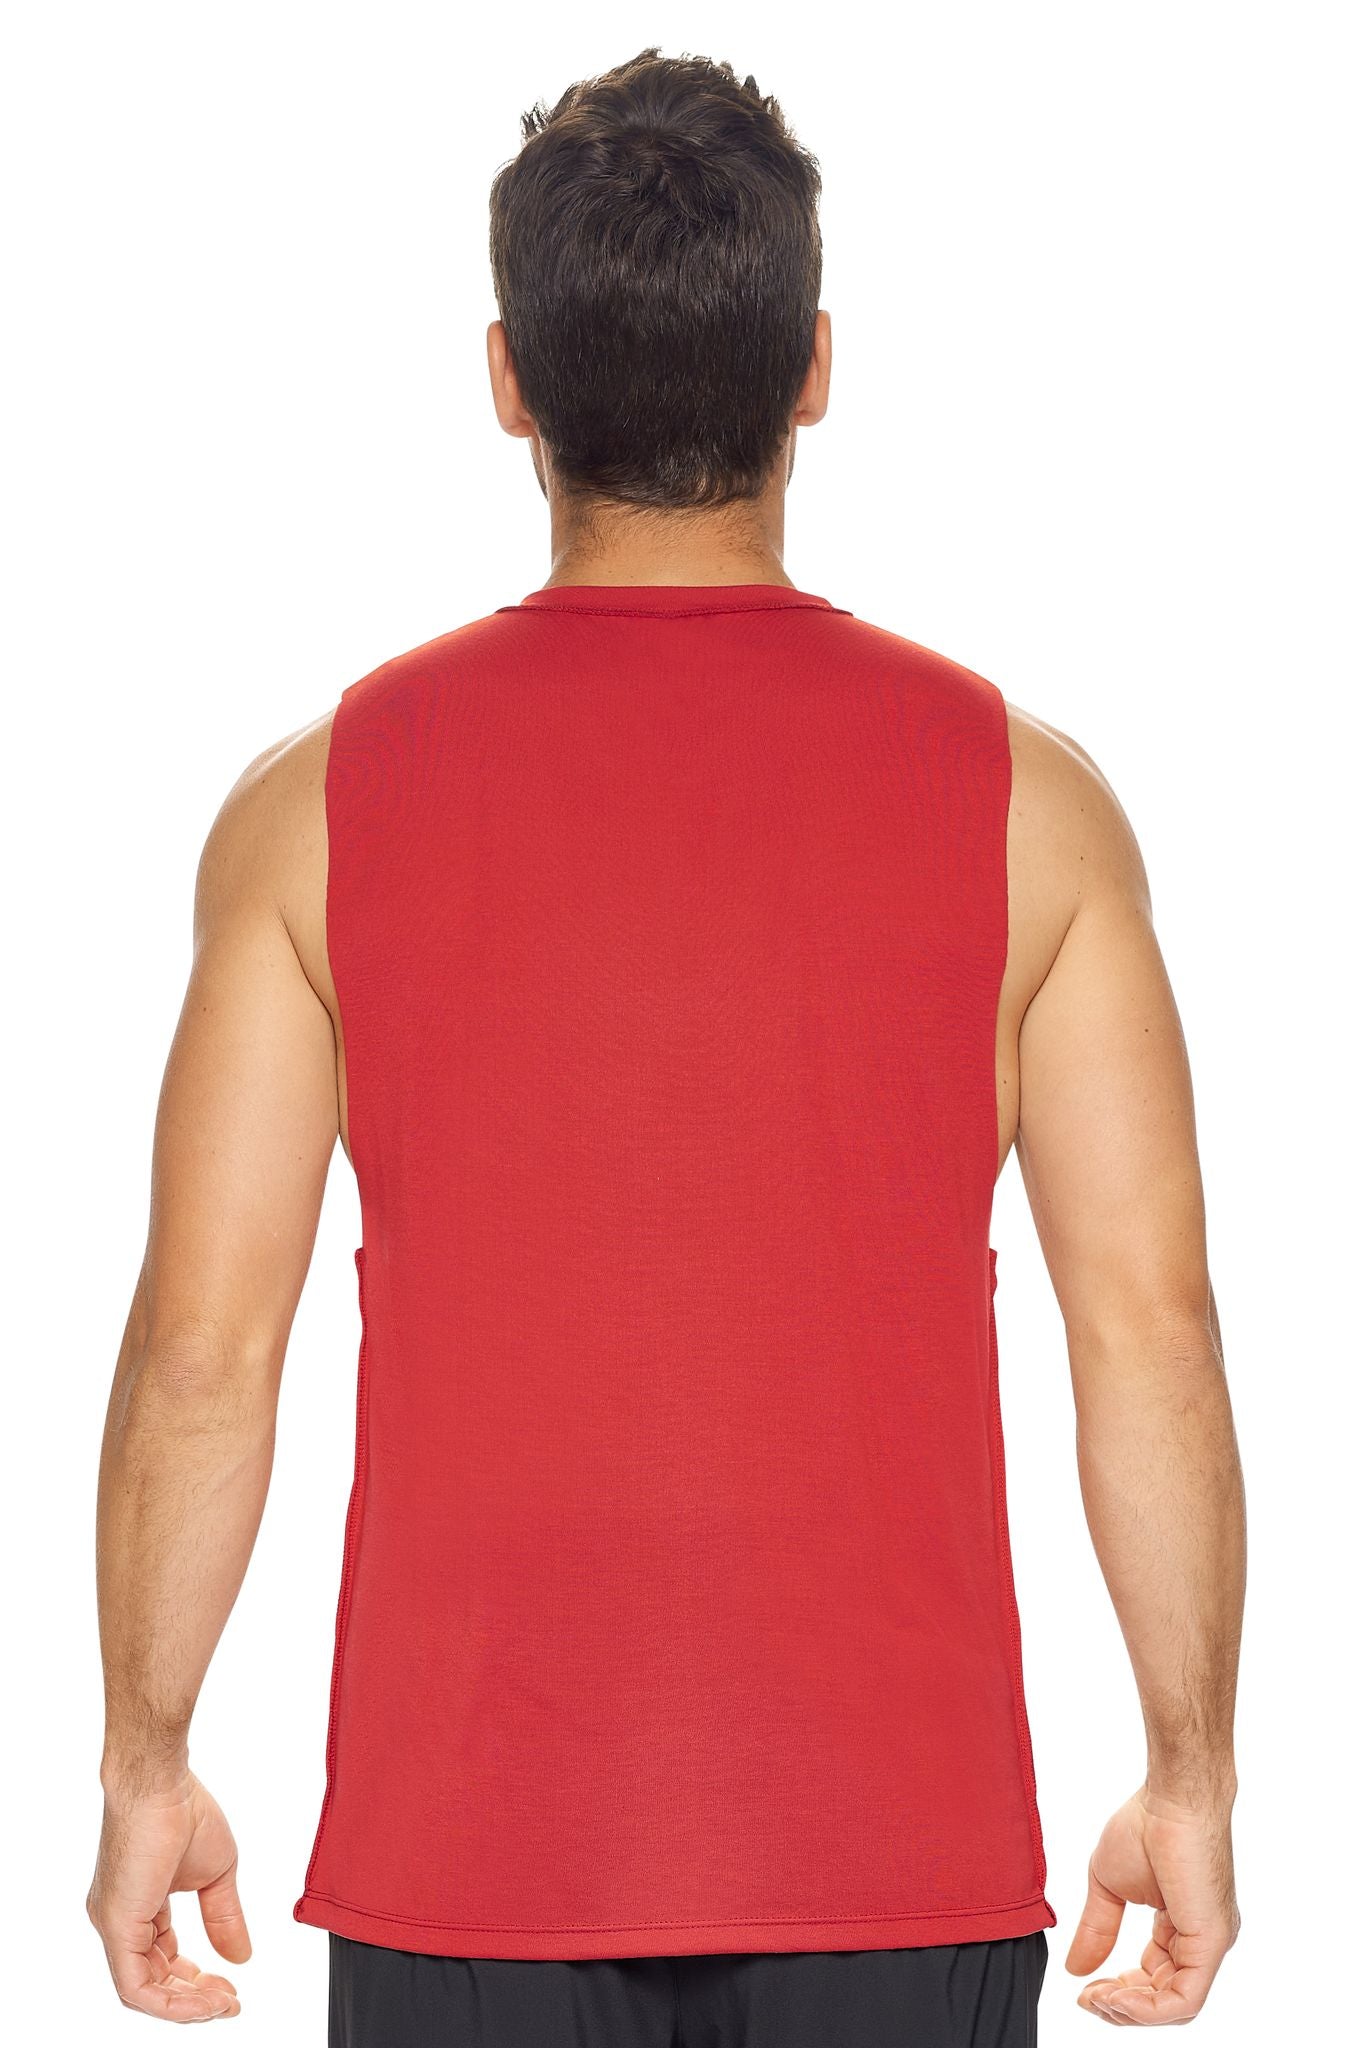 Expert Brand Wholesale Men's Siro™ Raw Edge Muscle Tee in Scarlet Image 3#scarlet